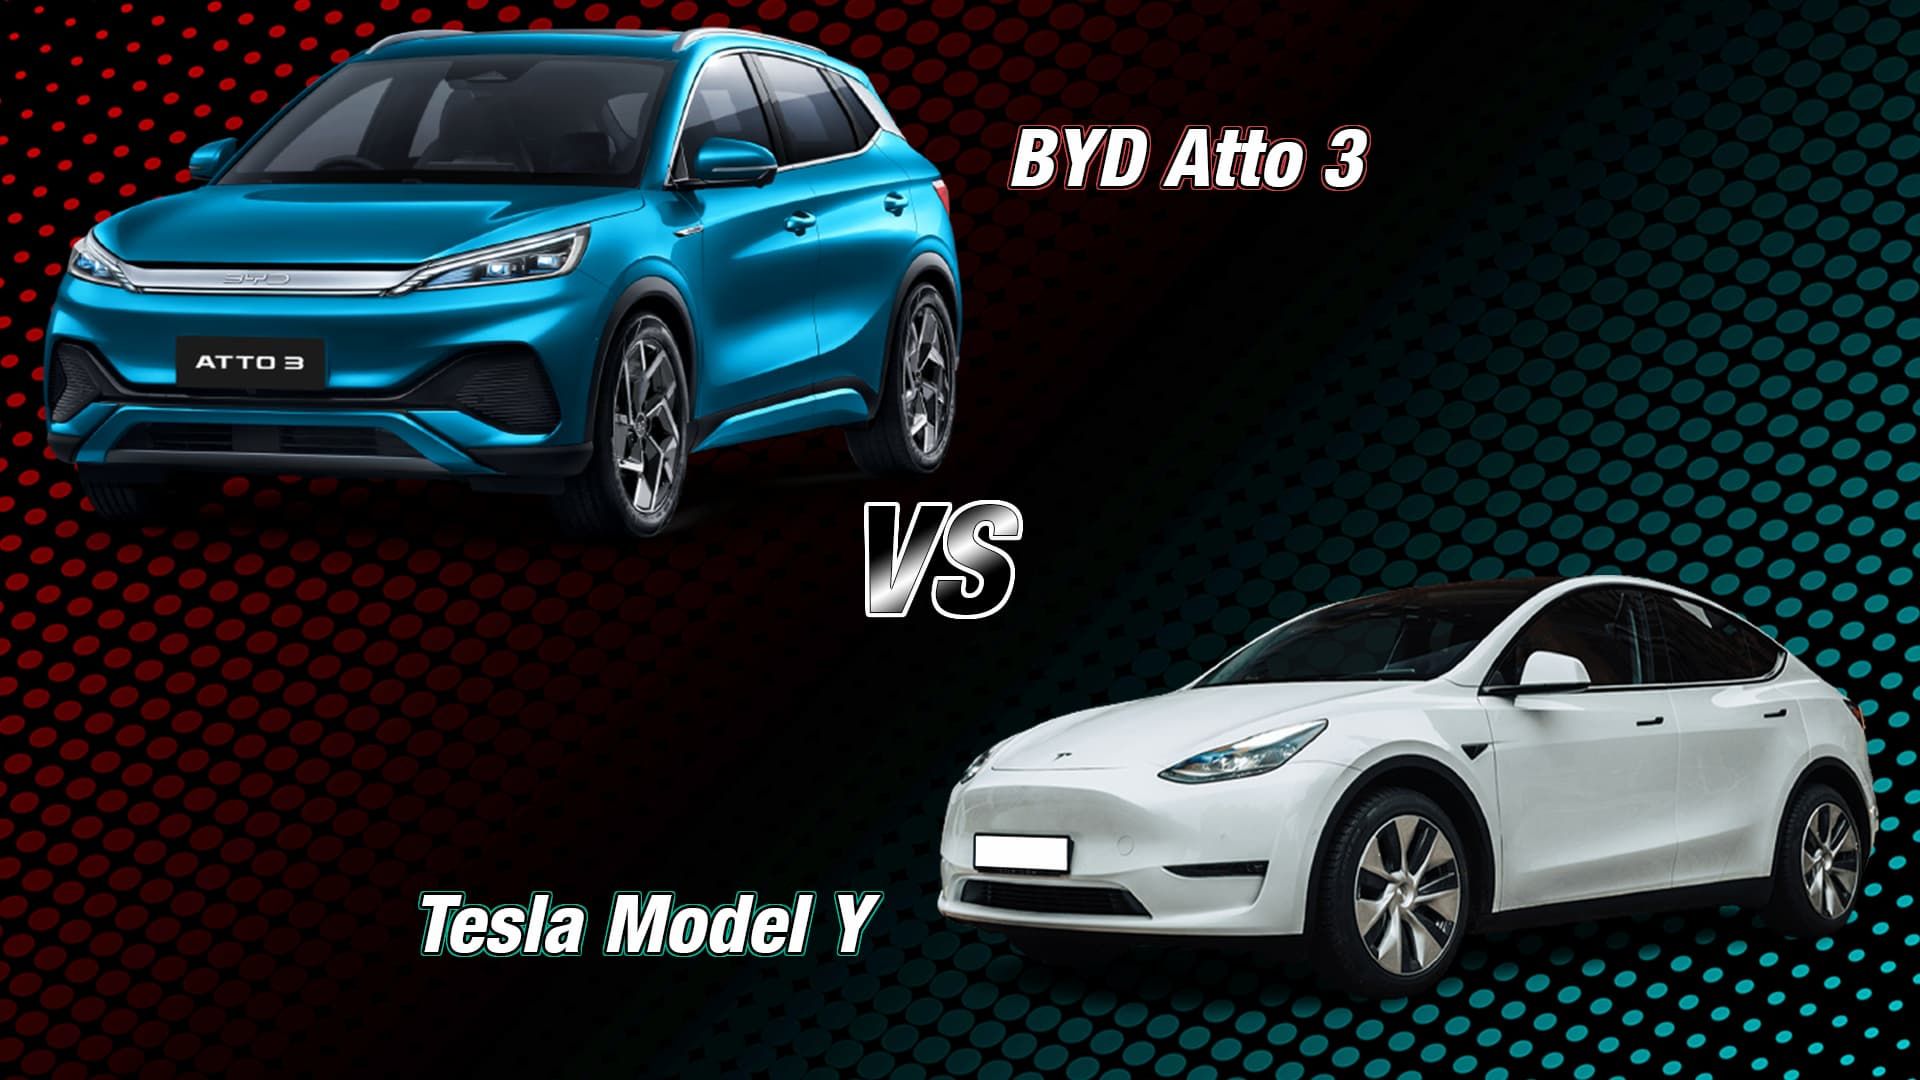 BYD Atto 3 vs Tesla Model Y comparison